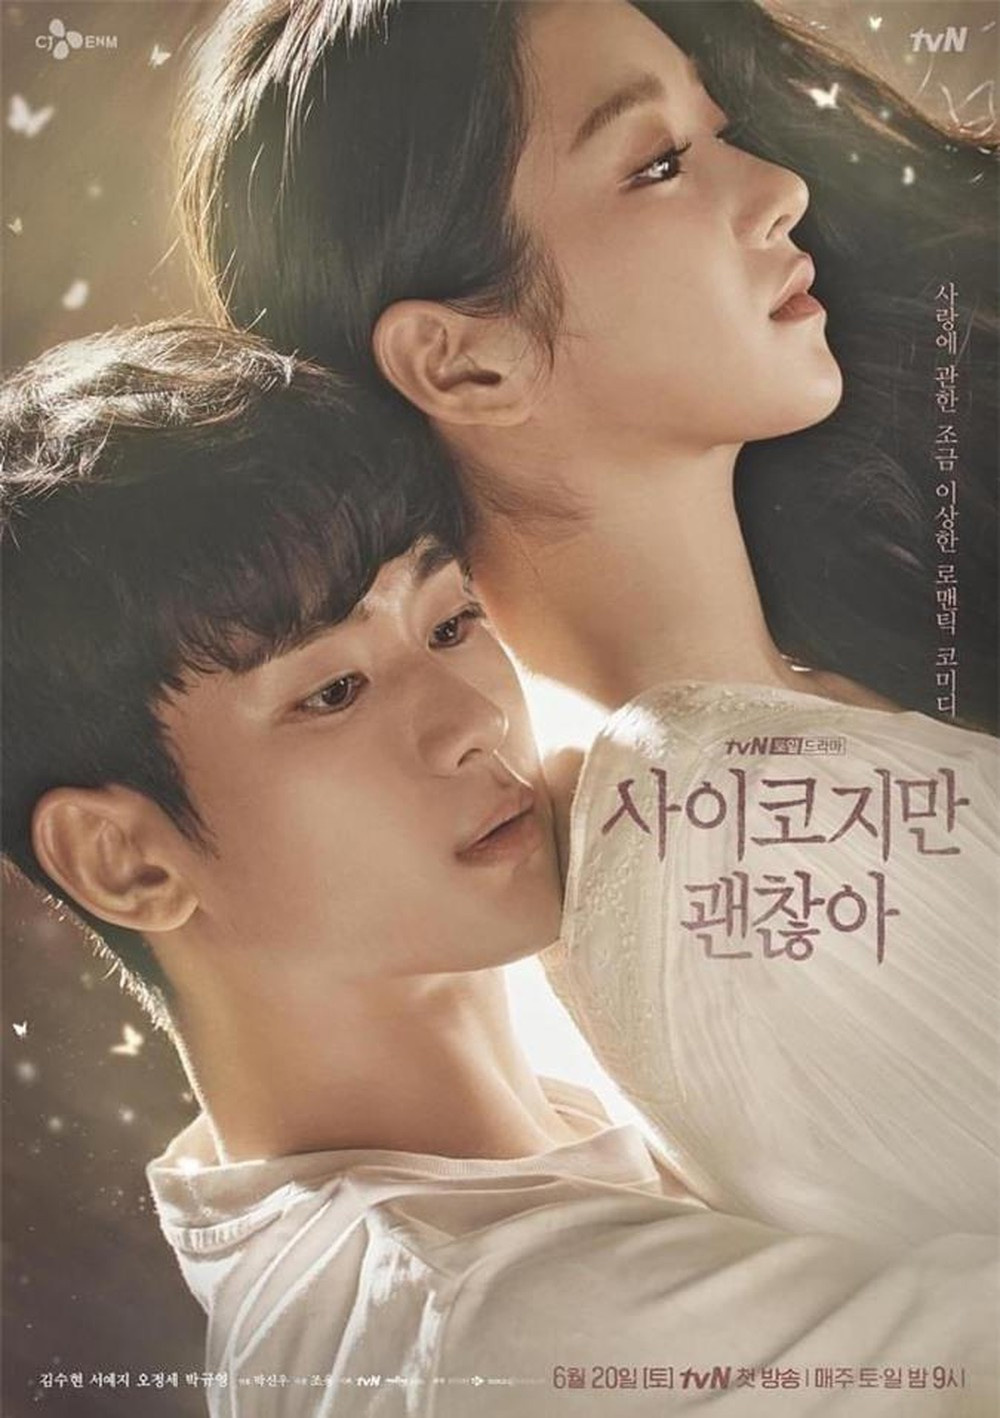  
Cặp đôi đang "gây bão" màn ảnh xứ Hàn trong thời gian gần đây (Ảnh: TvN)